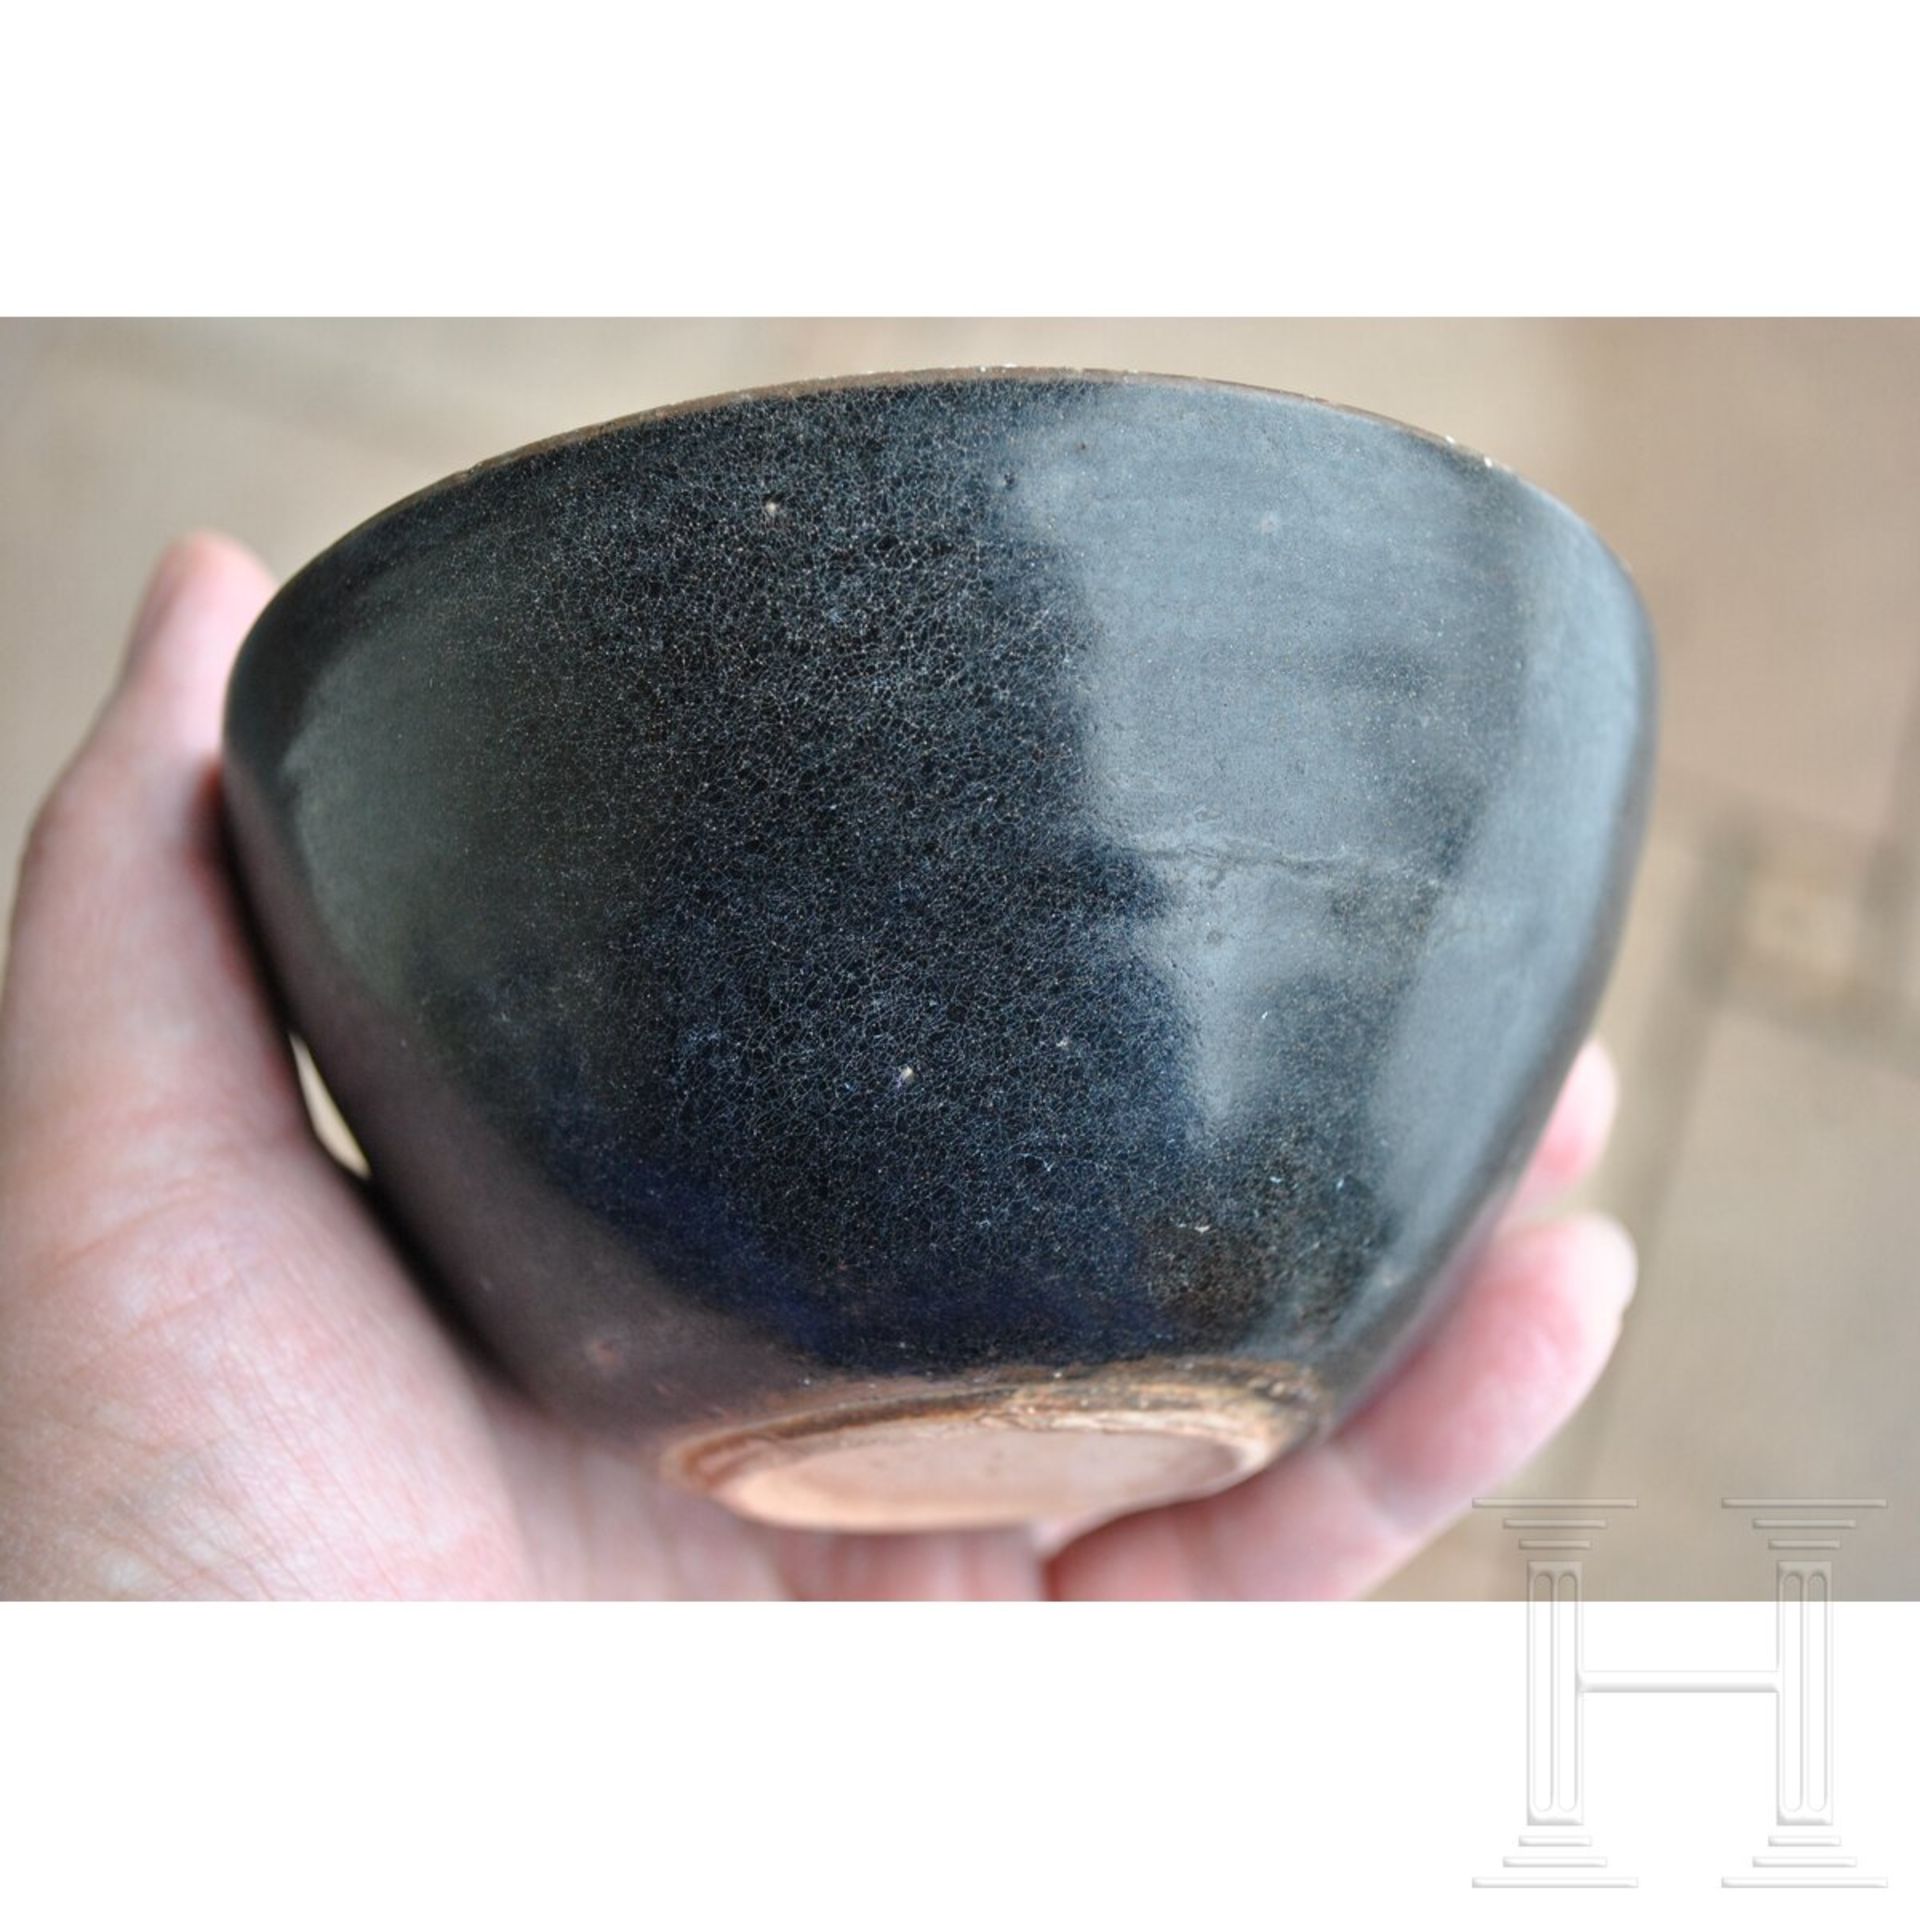 Jizhou-Teeschale, schwarz glasiert, wohl südliche Song-Dynastie (12. - 13. Jhdt.) - Image 10 of 17